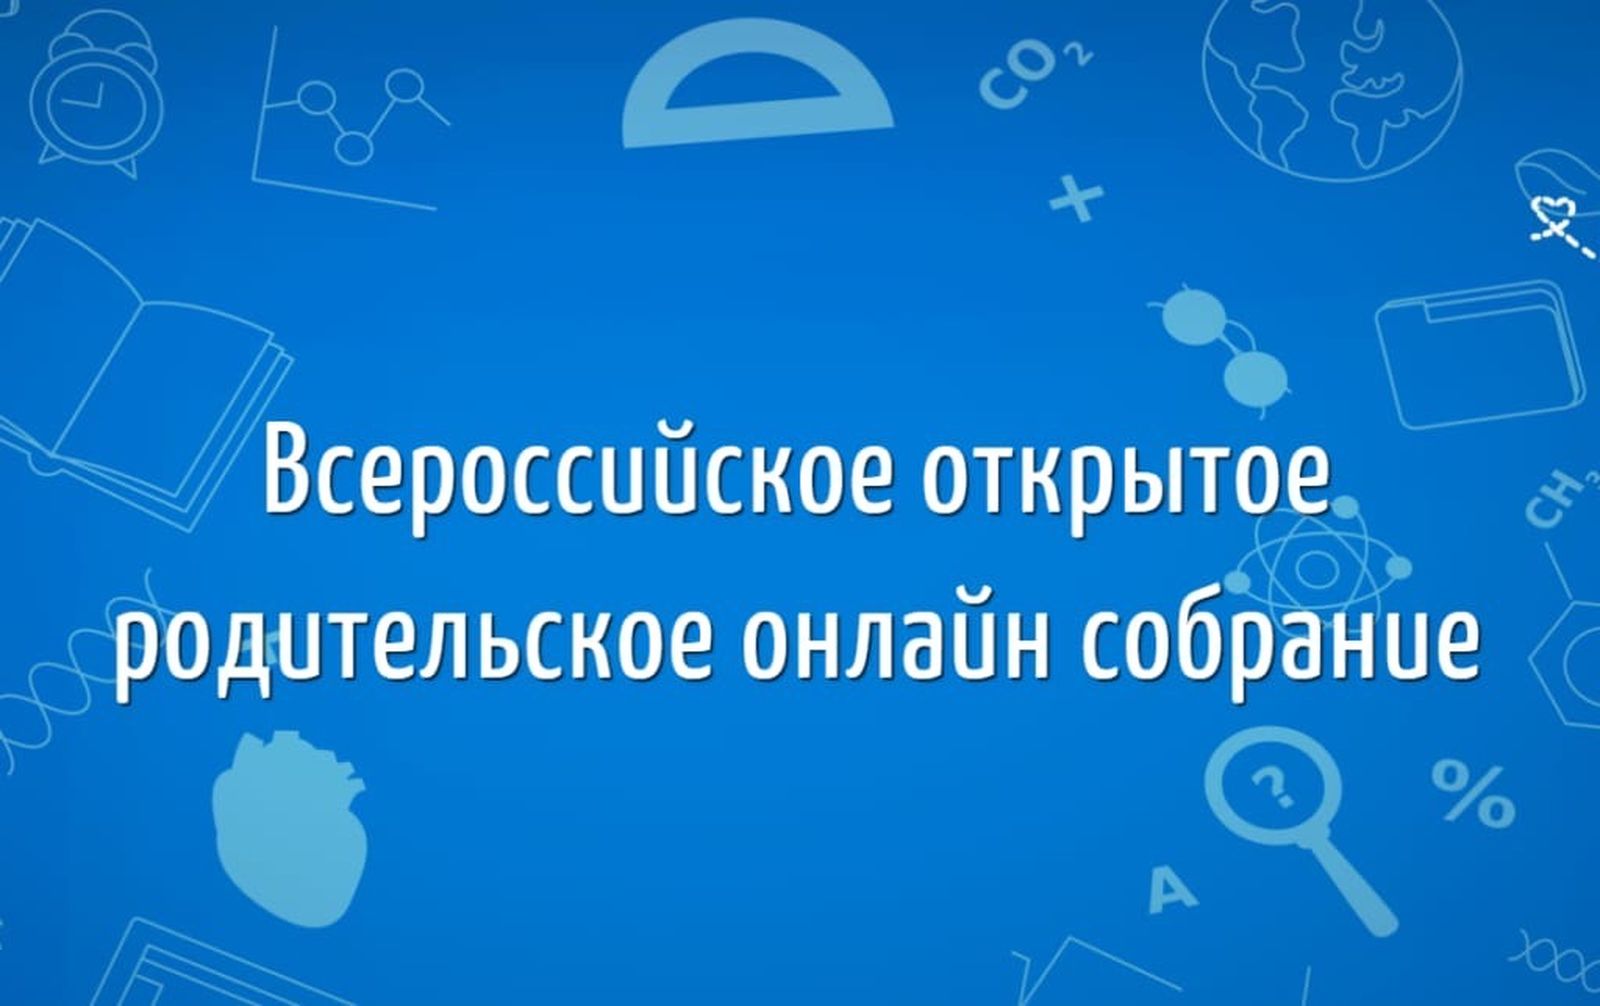 Всероссийское онлайн собрание о изменениях в ЕГЭ.